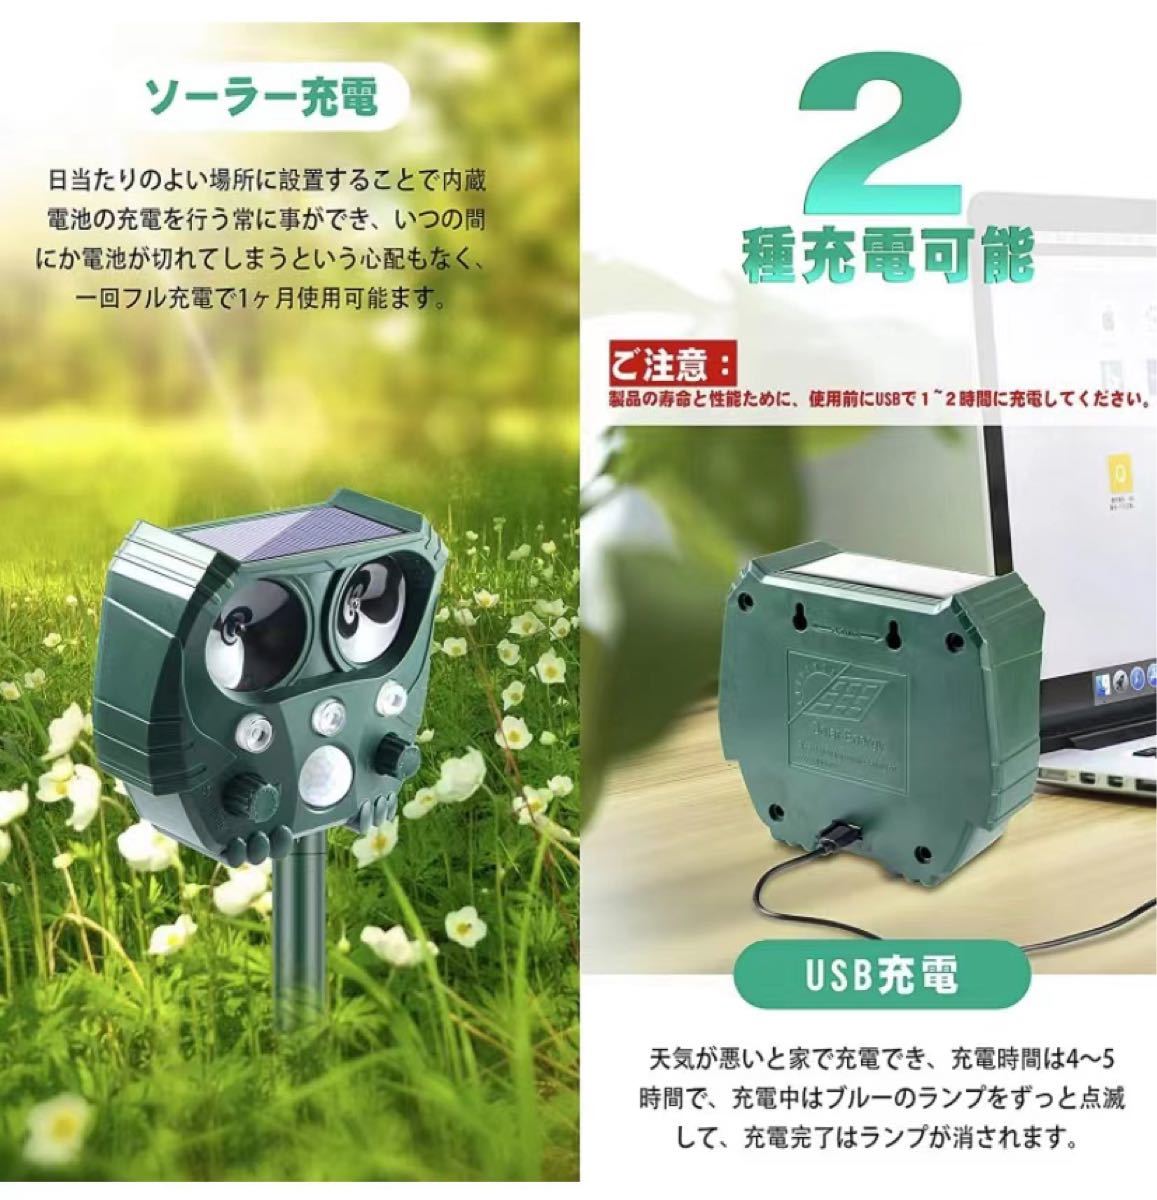 新品 ネコよけ 動物撃退器超音波 USBソーラー充電 電池 IPX4防水防塵 日本語 害獣撃退